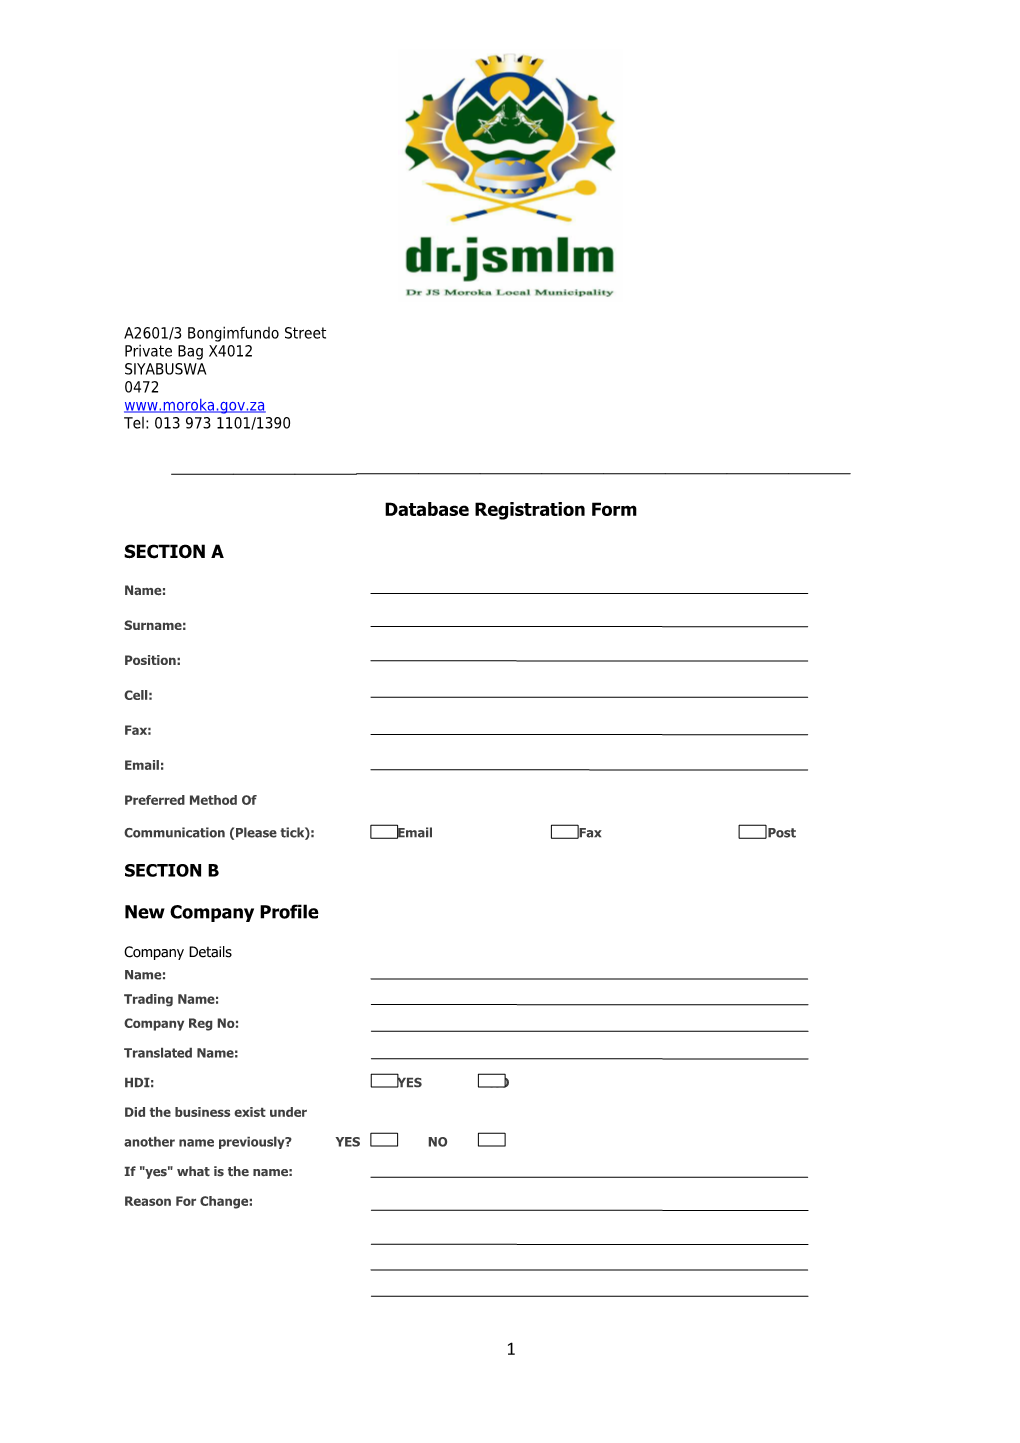 Database Registration Form